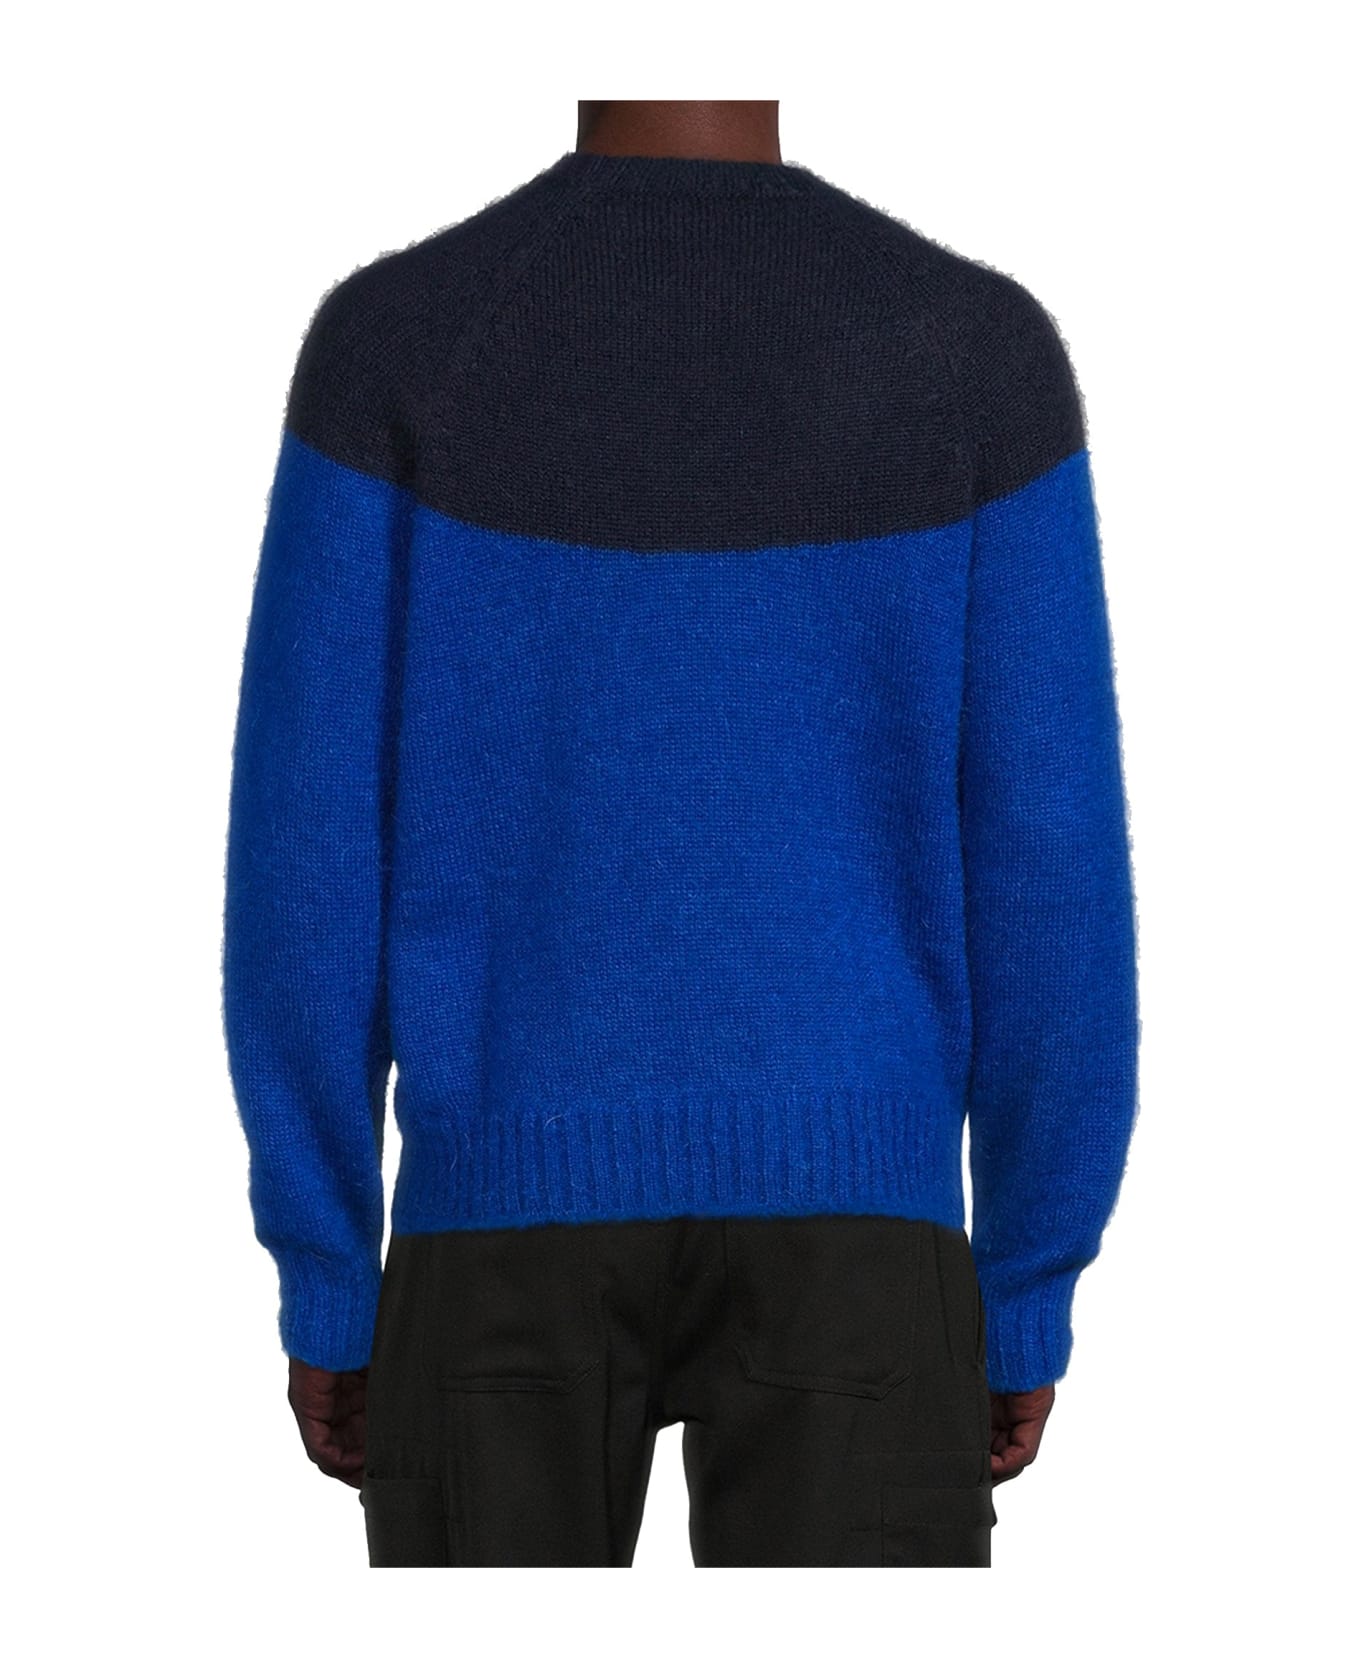 Alexander McQueen Wool Sweater - Blue